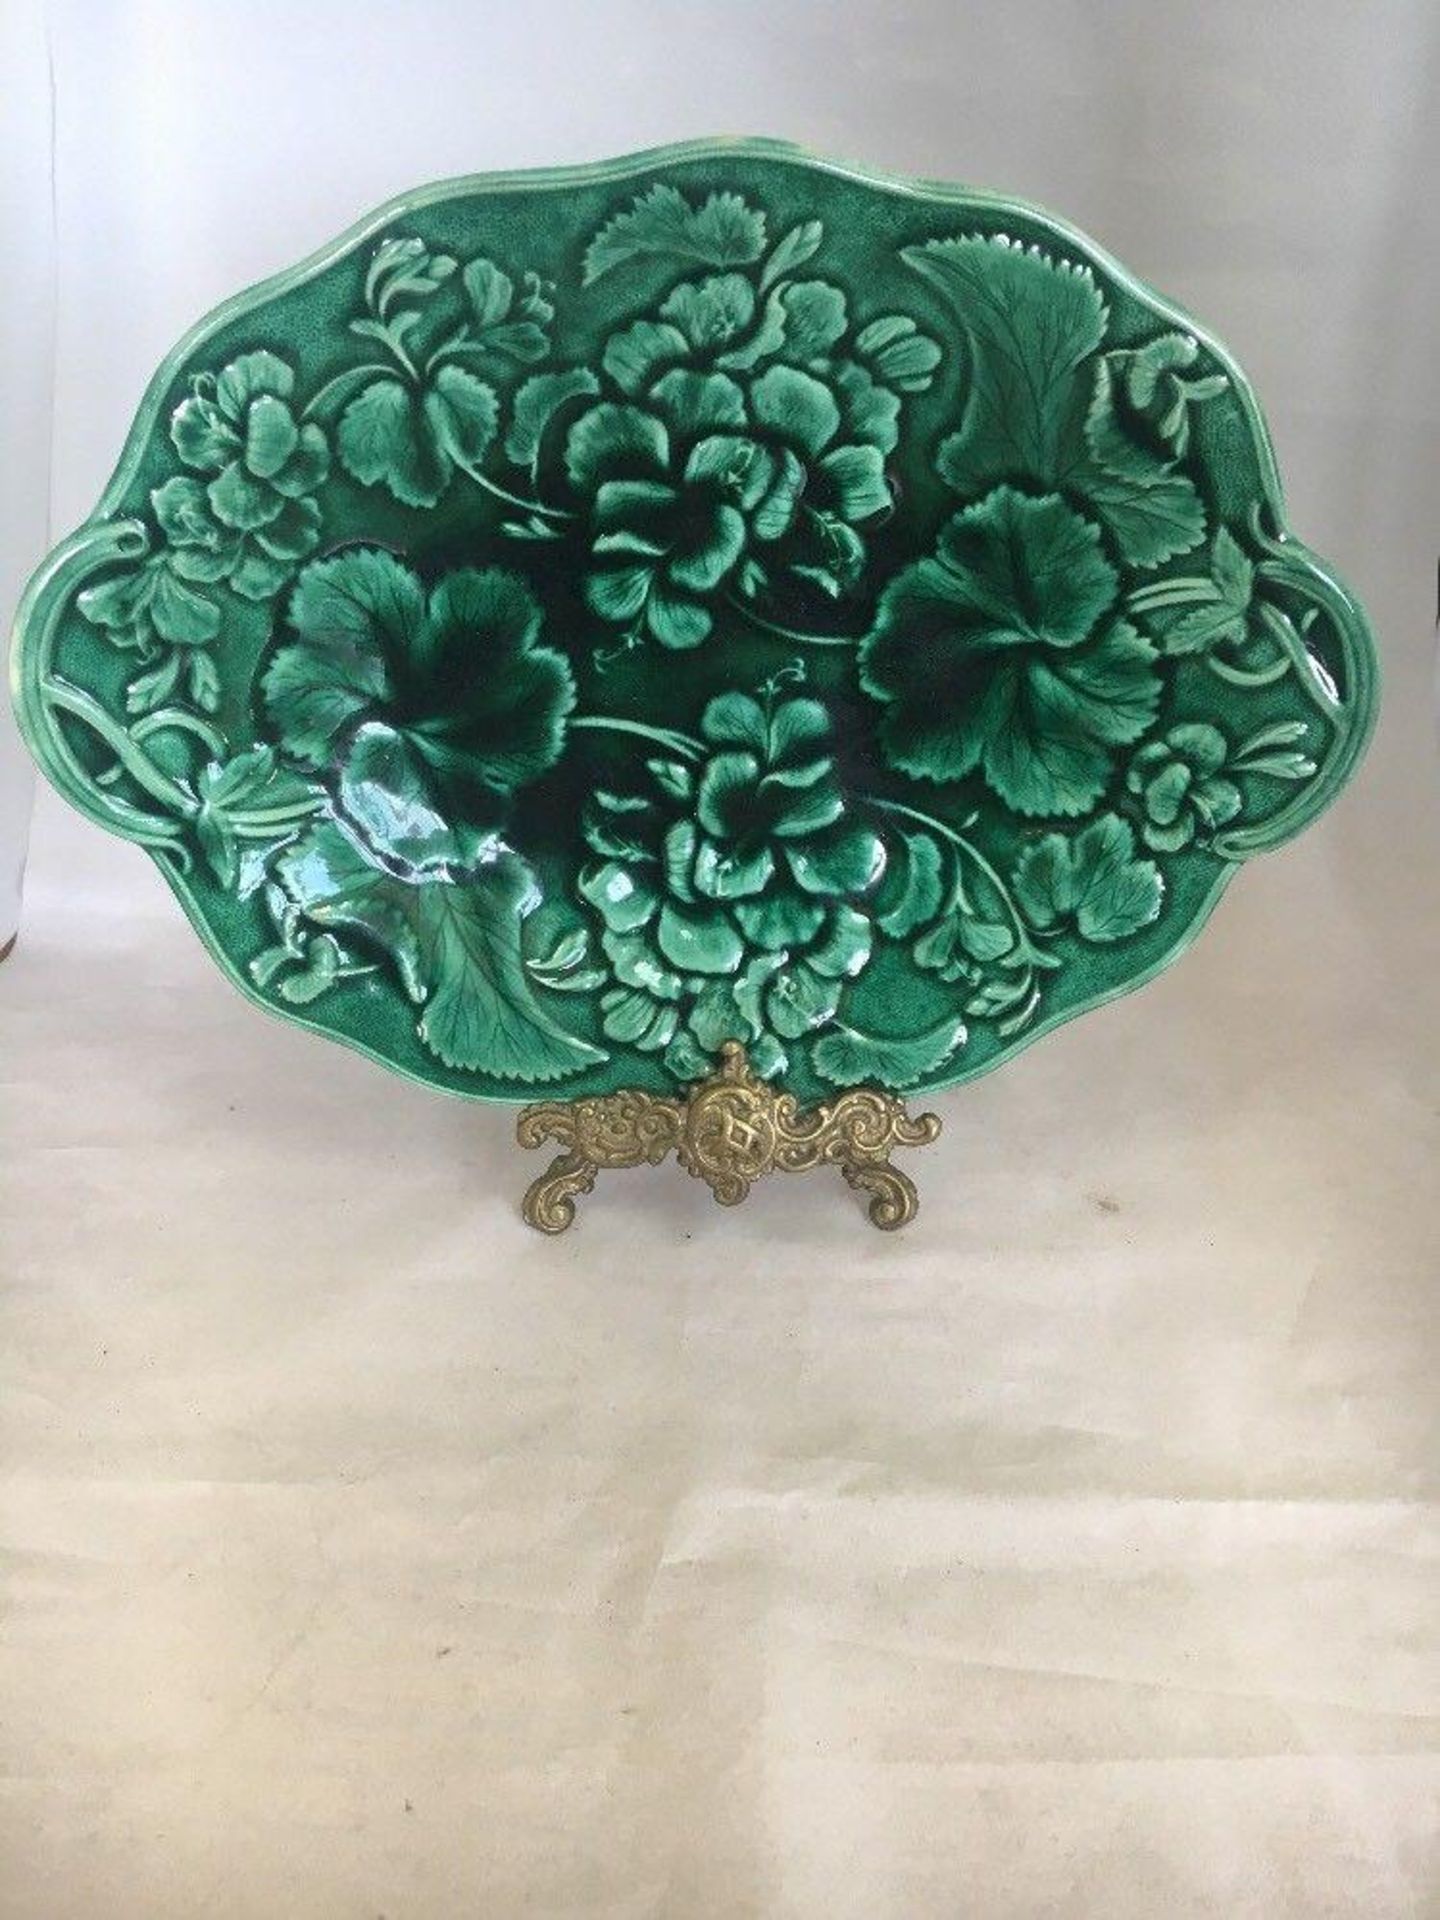 Antique Hope & Carter Green Geranium Leaf Majolica Handled Platter/Plate Dish - Image 2 of 4